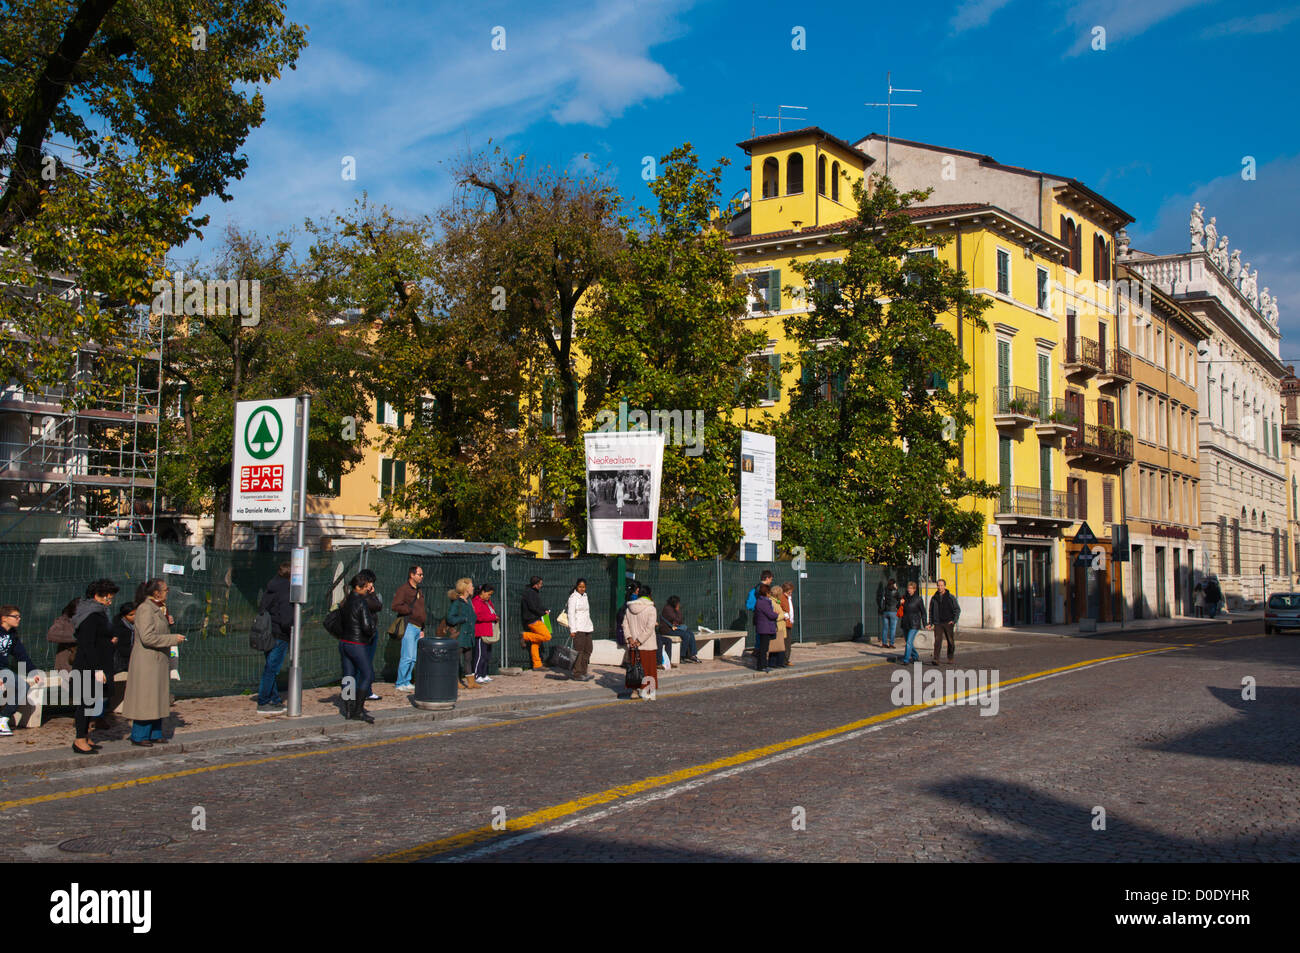 Fermata bus lungo Corso Cavour street central città di Verona Veneto Italia del nord Europa Foto Stock